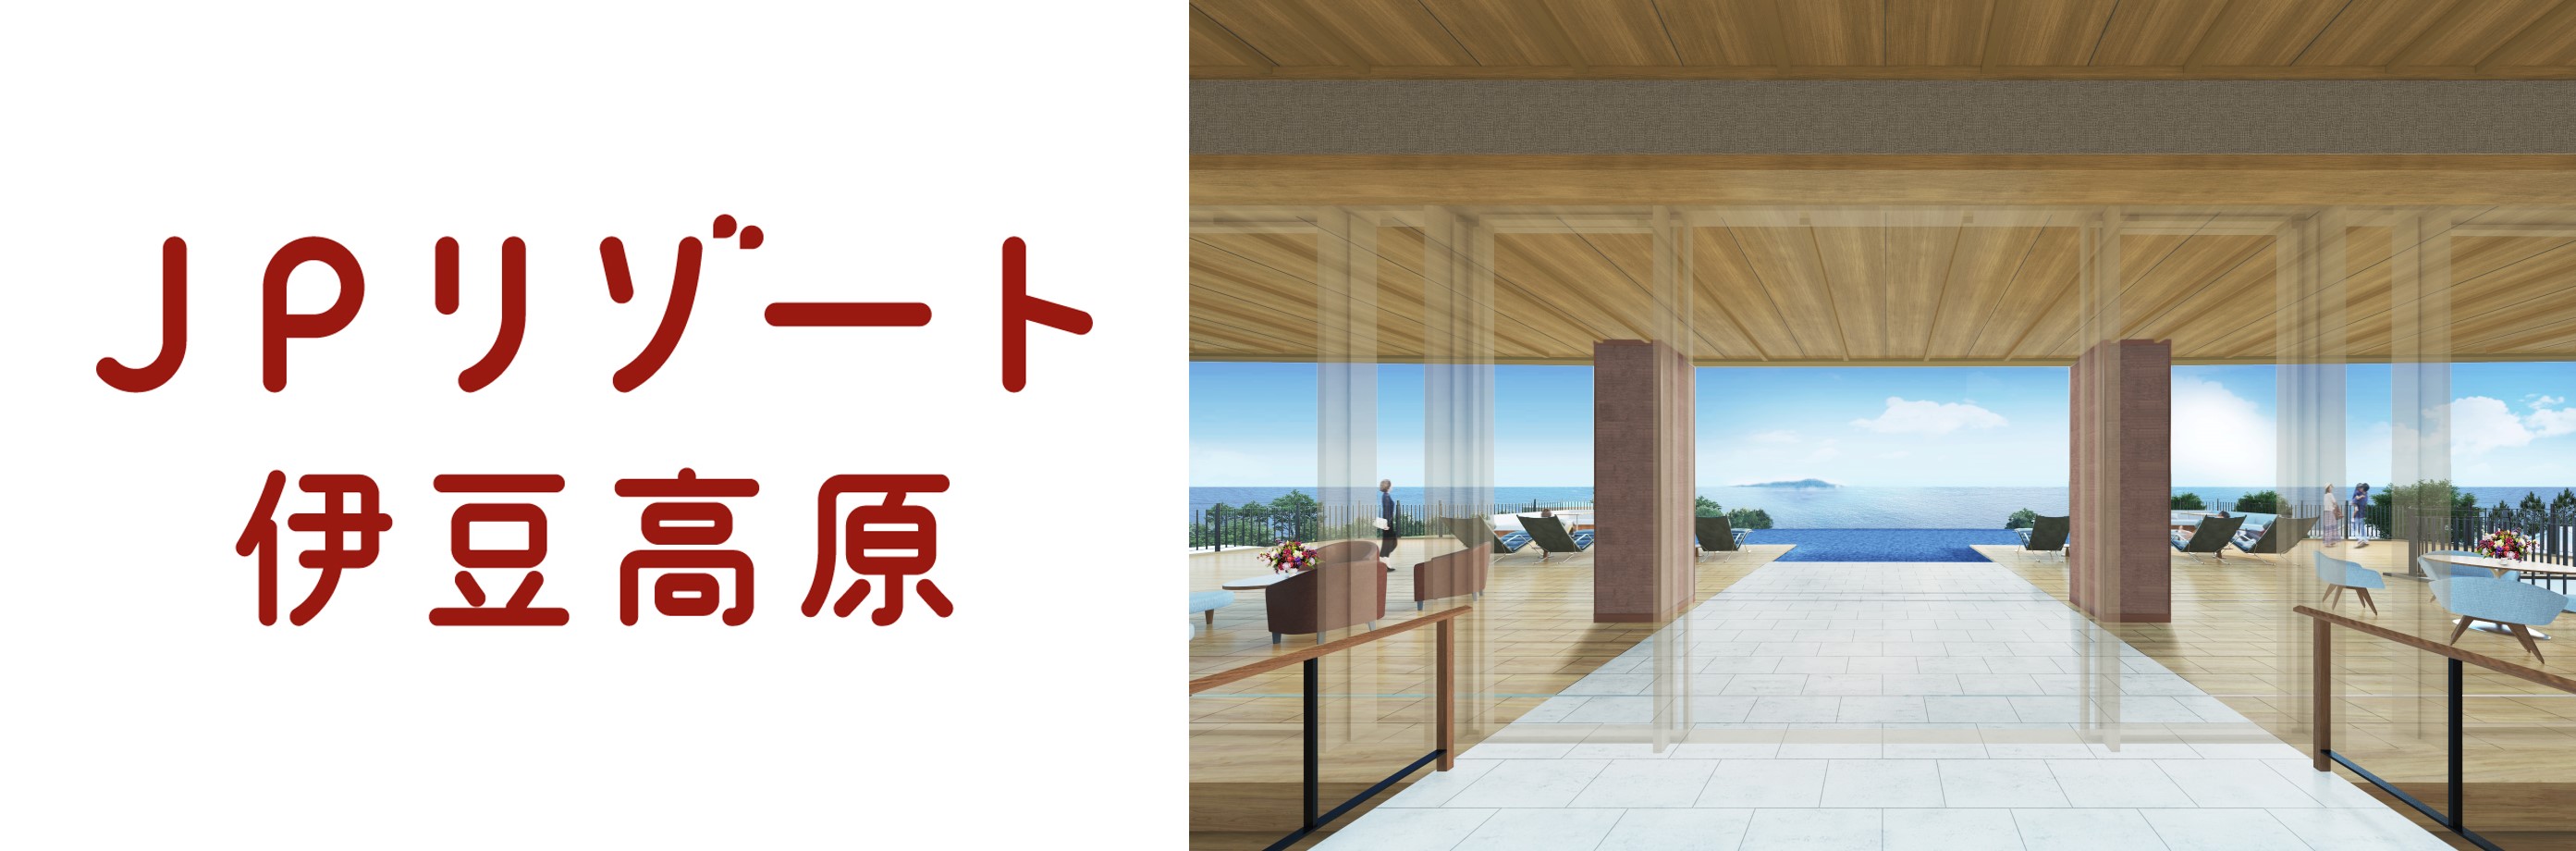 21年4月1日 かんぽの宿 伊豆高原 が名称を Jpリゾート 伊豆 高原 へ ワンランク上のおもてなしのホテルに生まれ変わります 日本郵政株式会社のプレスリリース